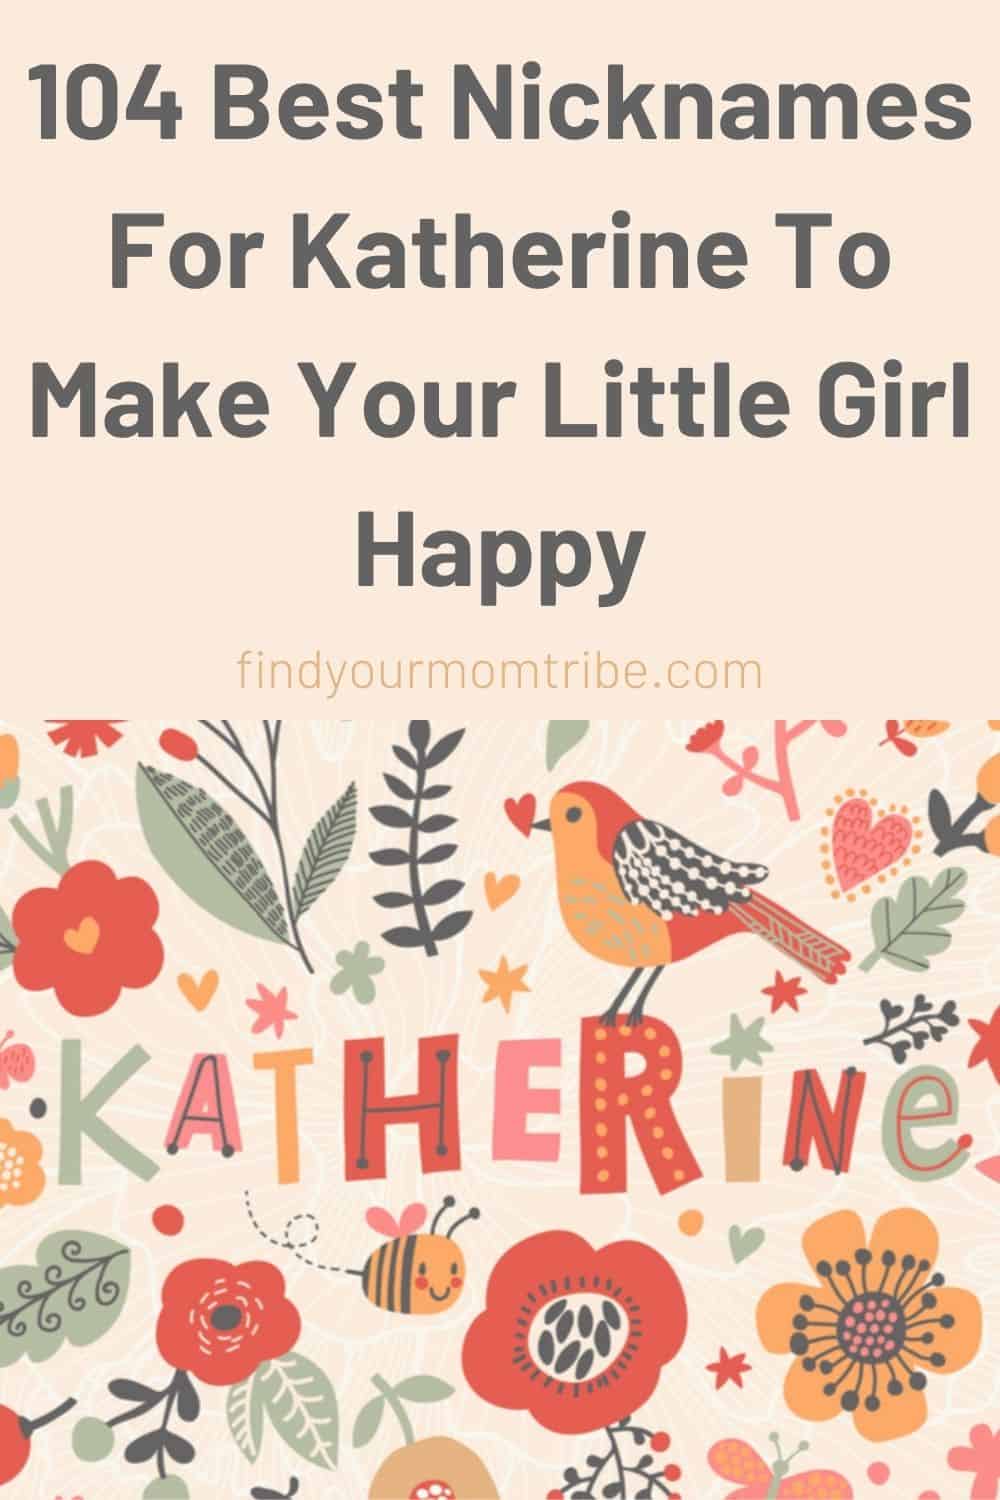 Pinterest nicknames for katherine